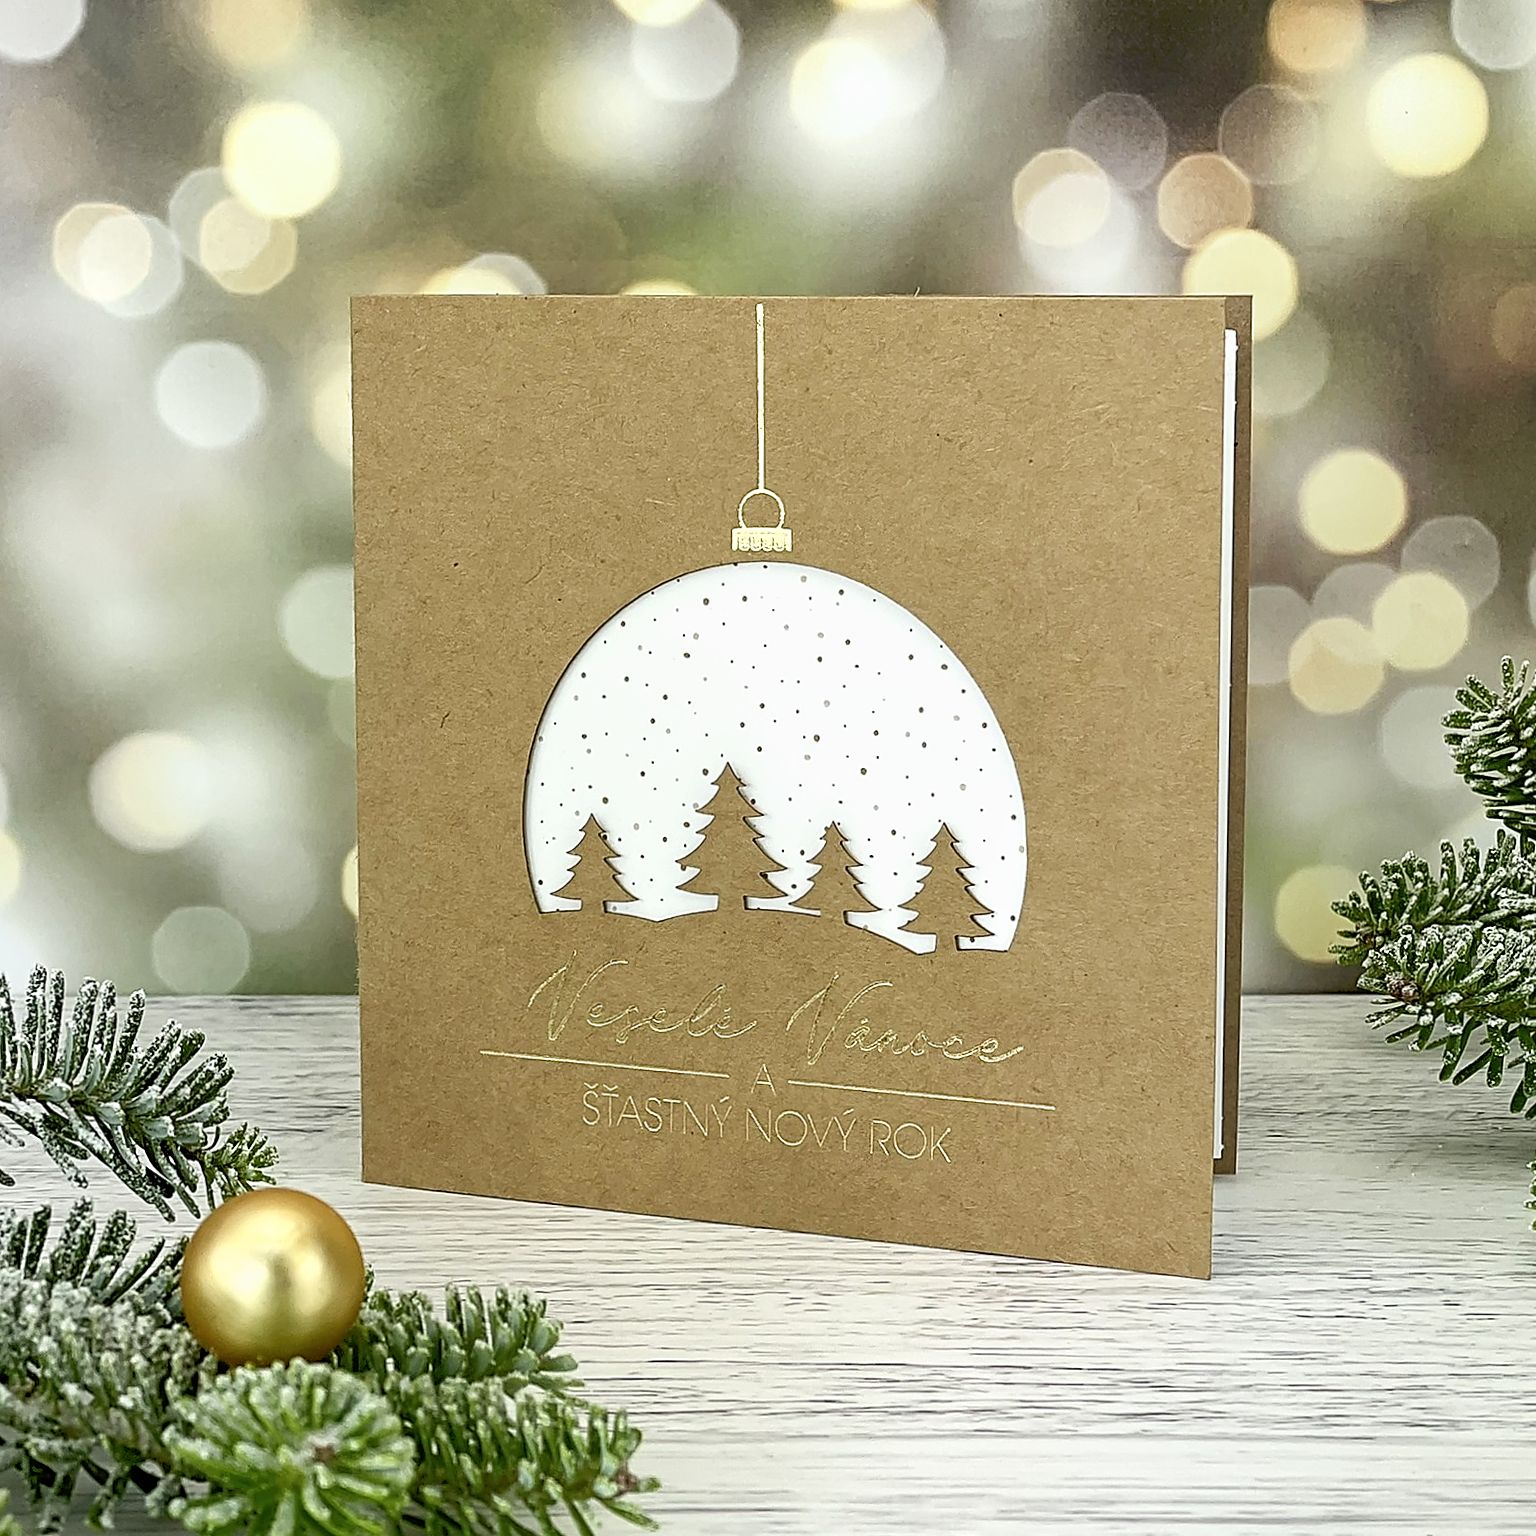 Novoroční–vánoční přání z recyklovaného papíru s laserovaným motivem zasněžené krajinky v baňce, otevírací, čtvercový formát 135 × 135 mm.